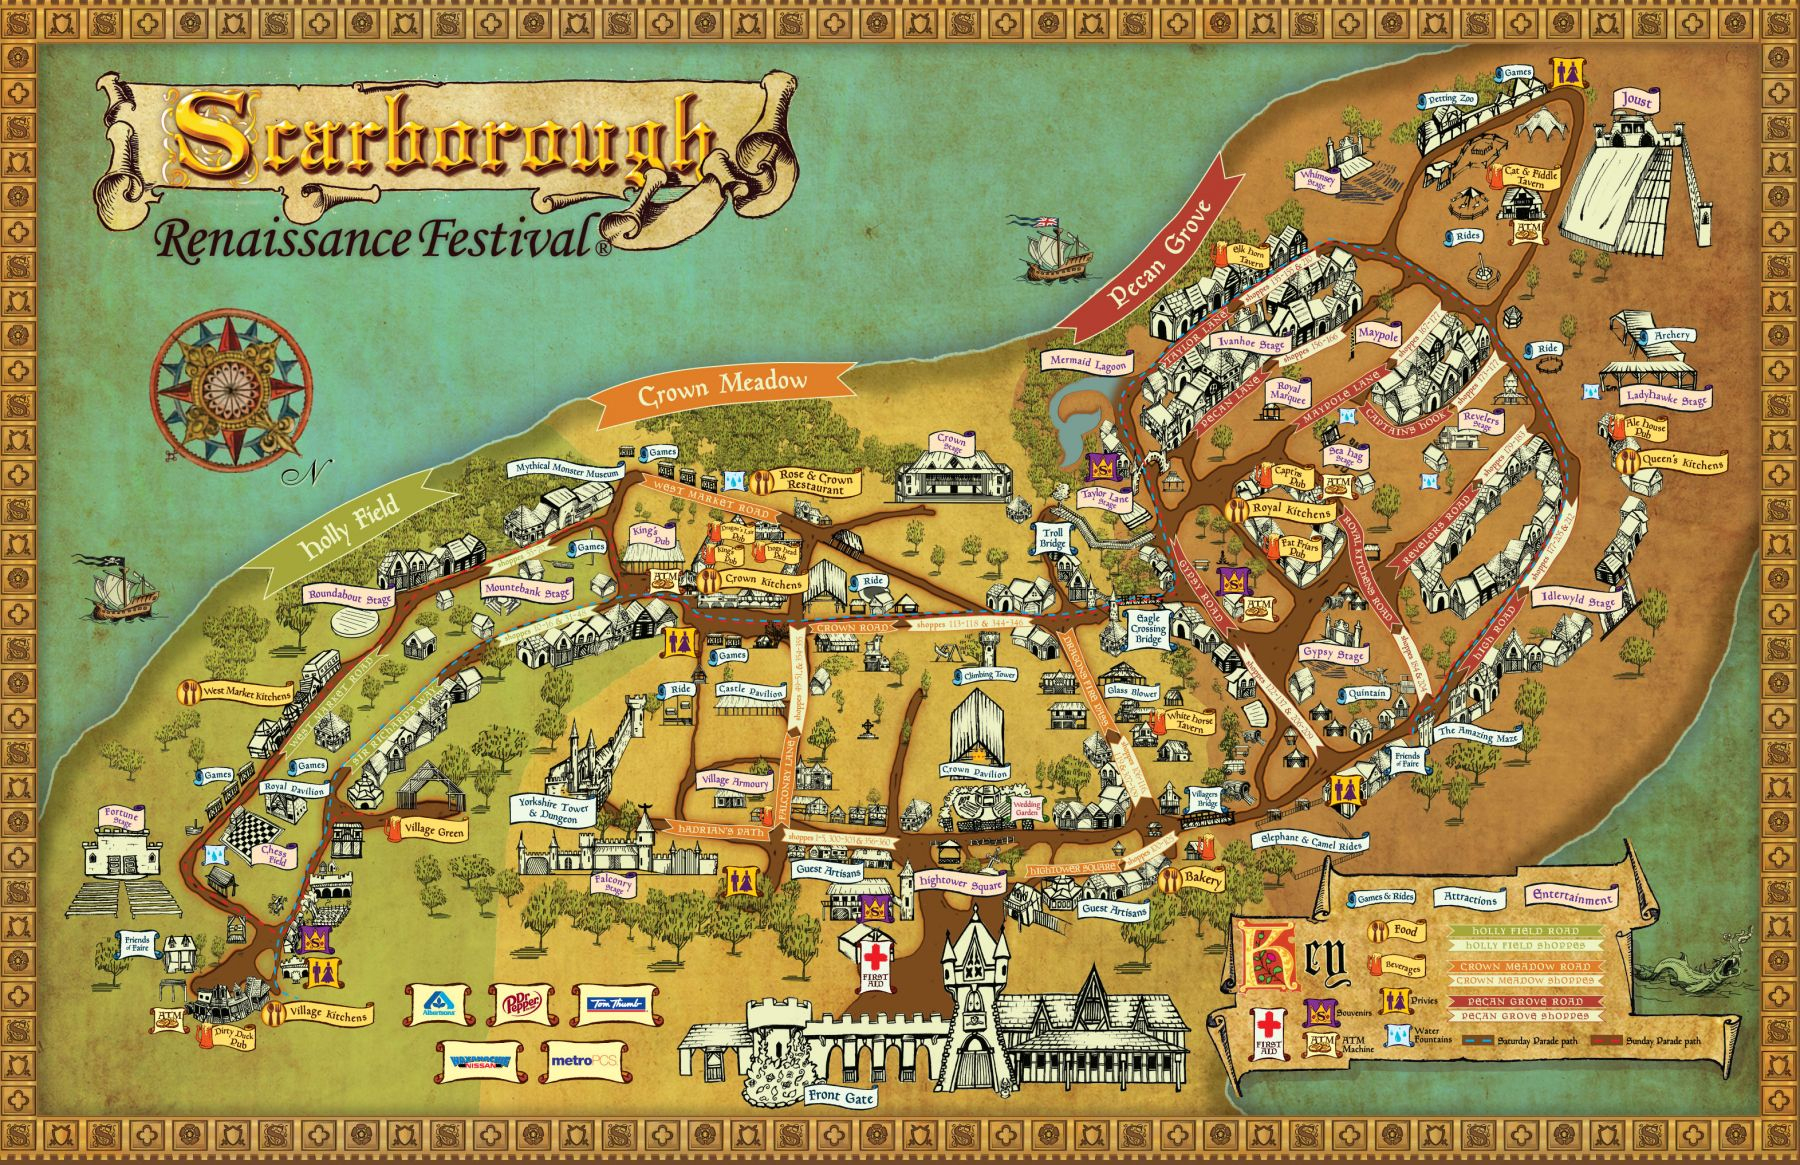 Festival Map - Scarborough Renaissance Festival - Texas Renaissance Festival Map